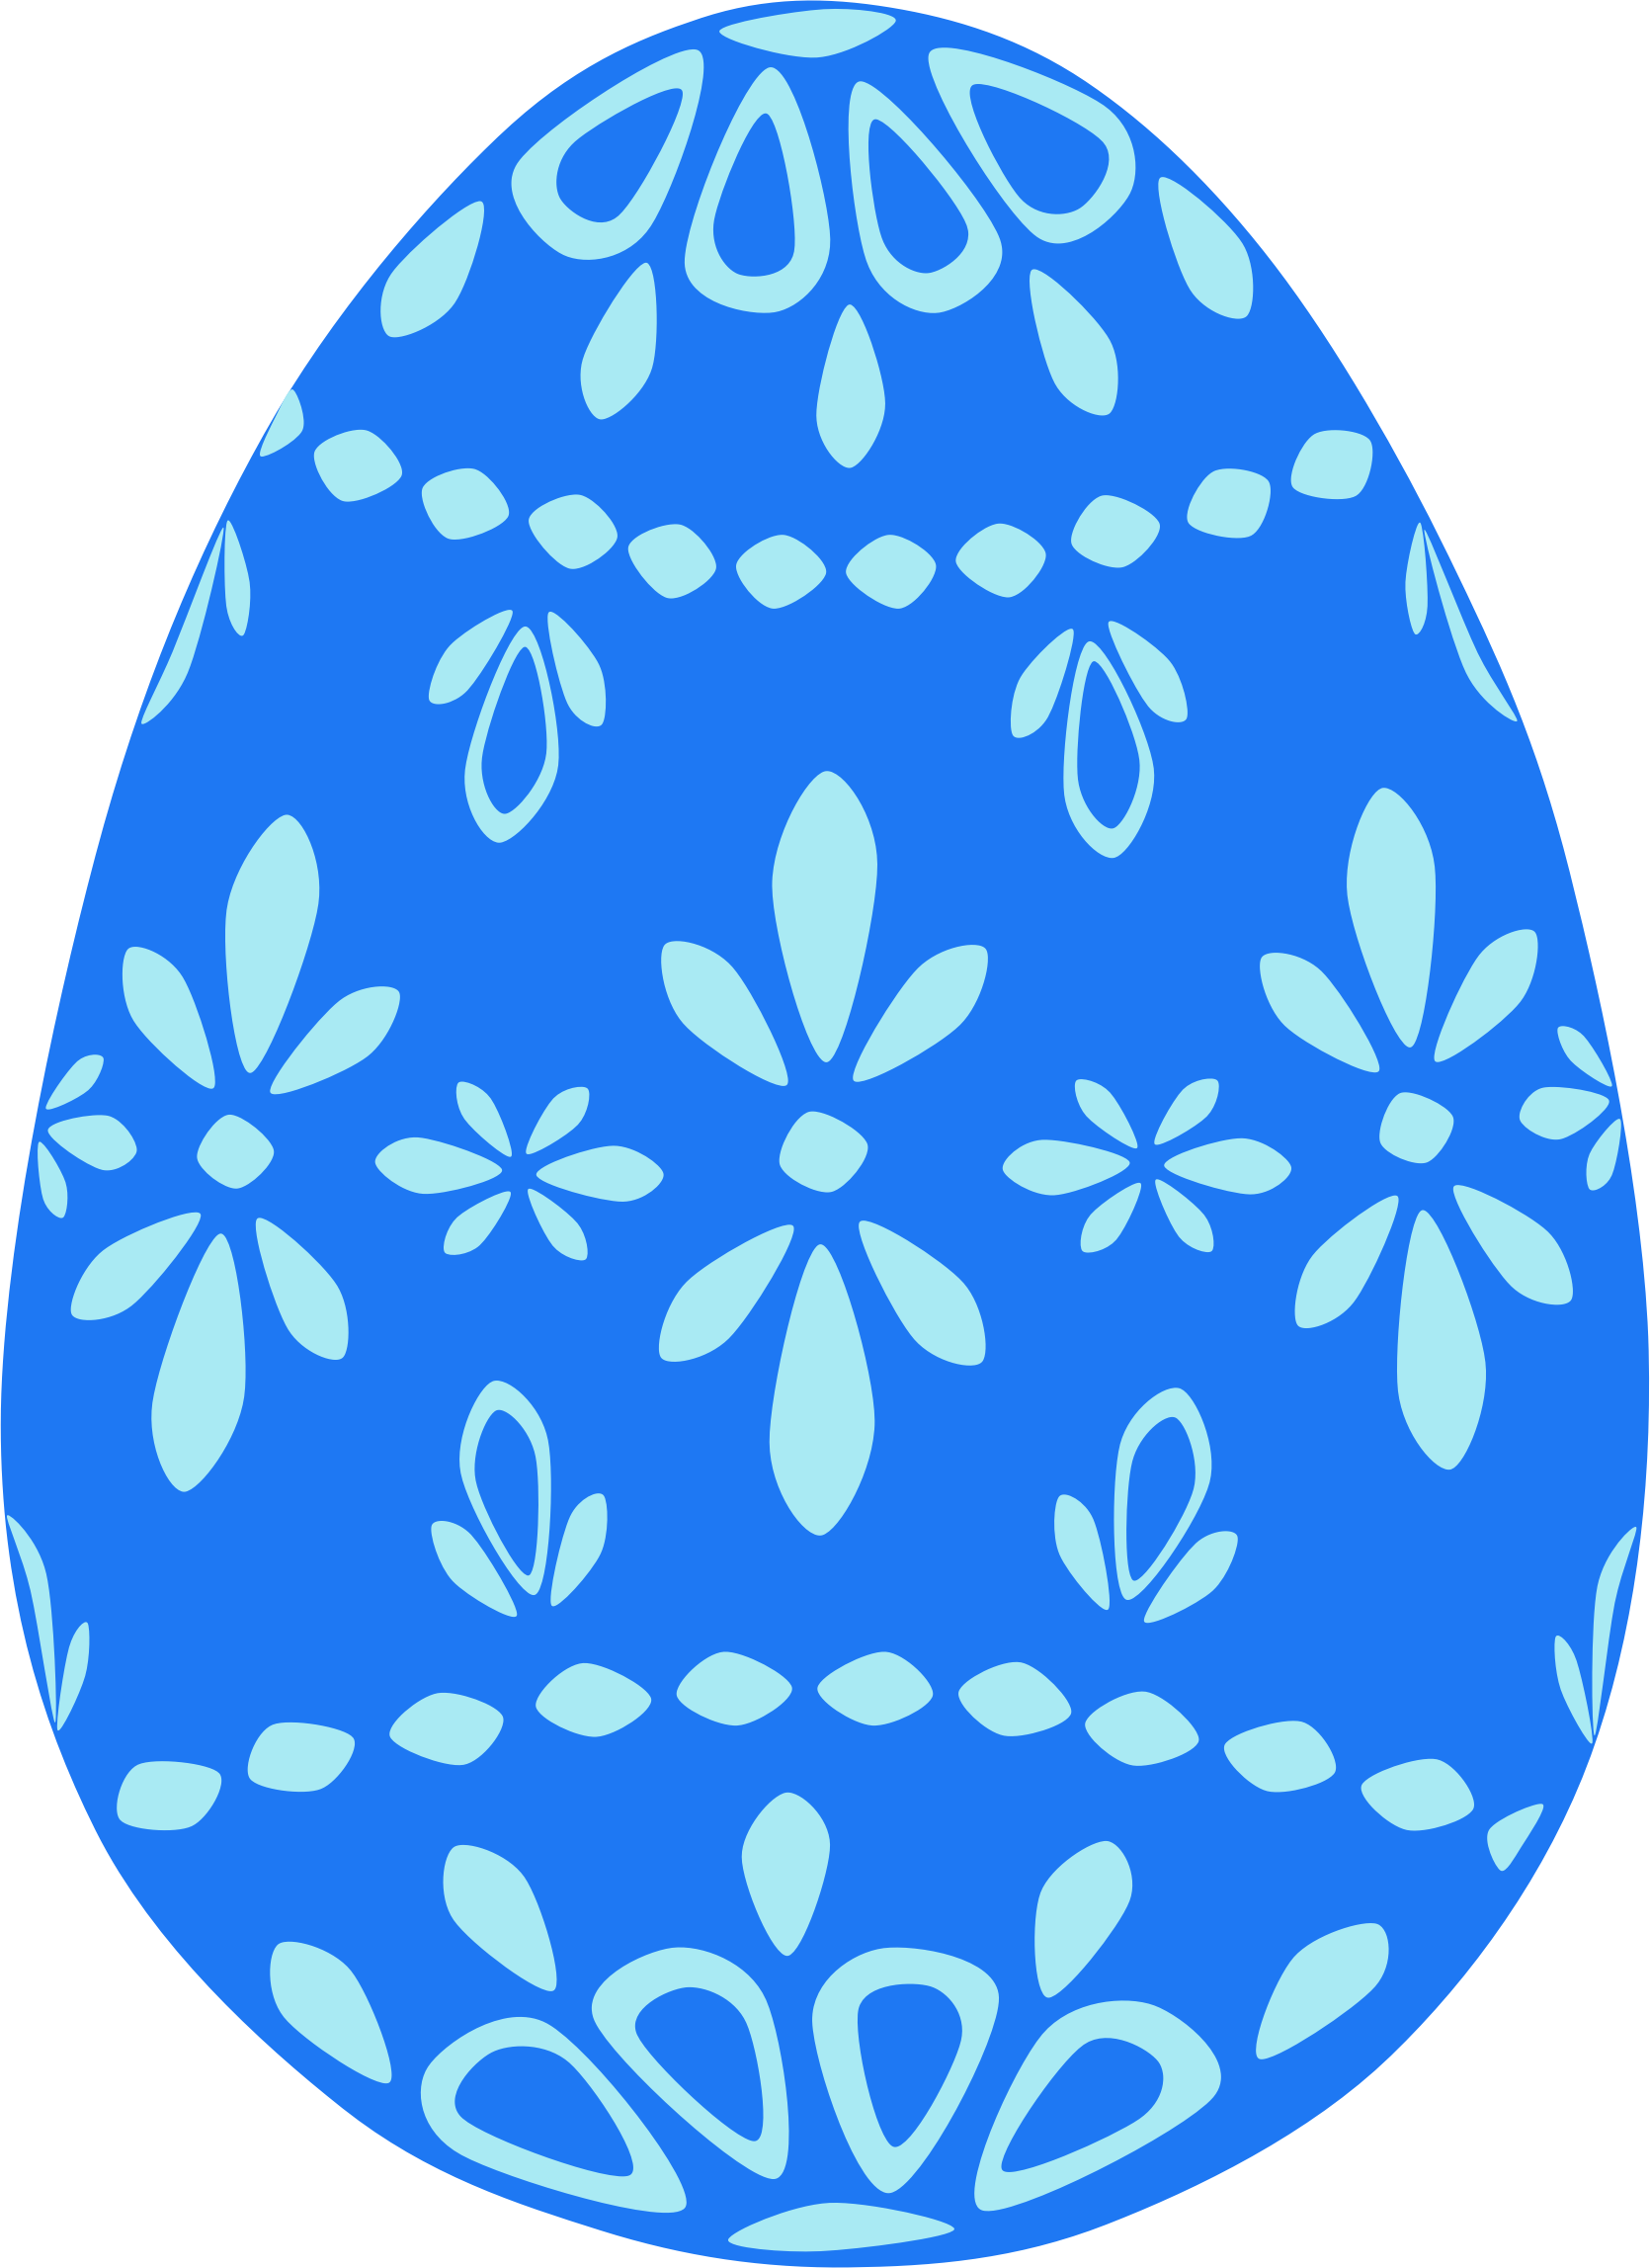 Trứng có hoa văn màu xanh